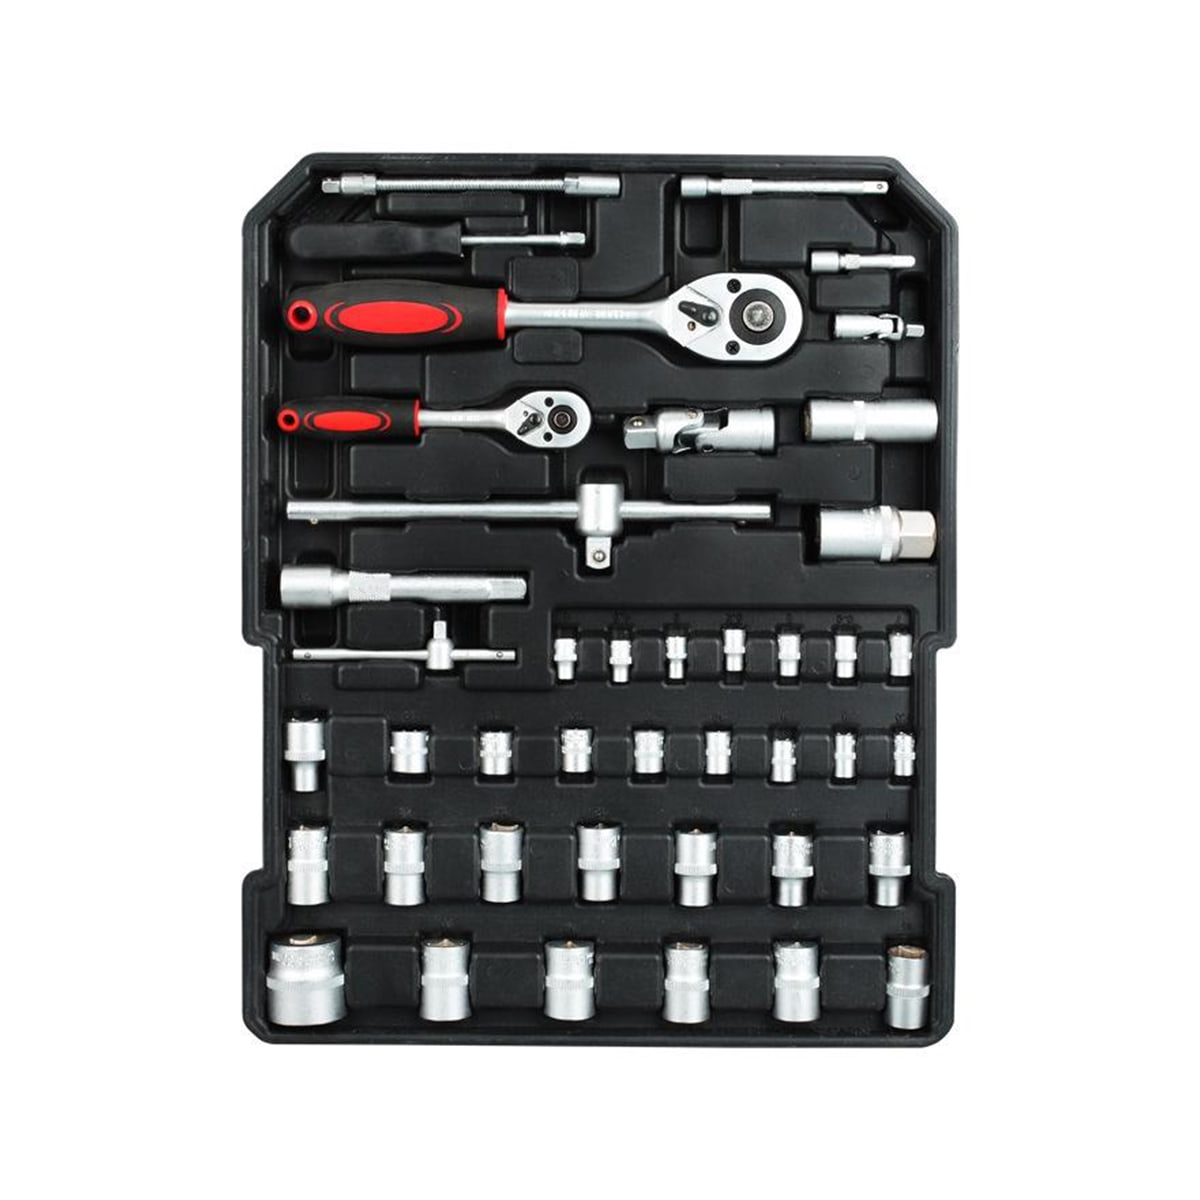 499 ks Ferramentas Professional Hardware Automotive Tool Socket Kit de Reparao de Automobile Tools Set